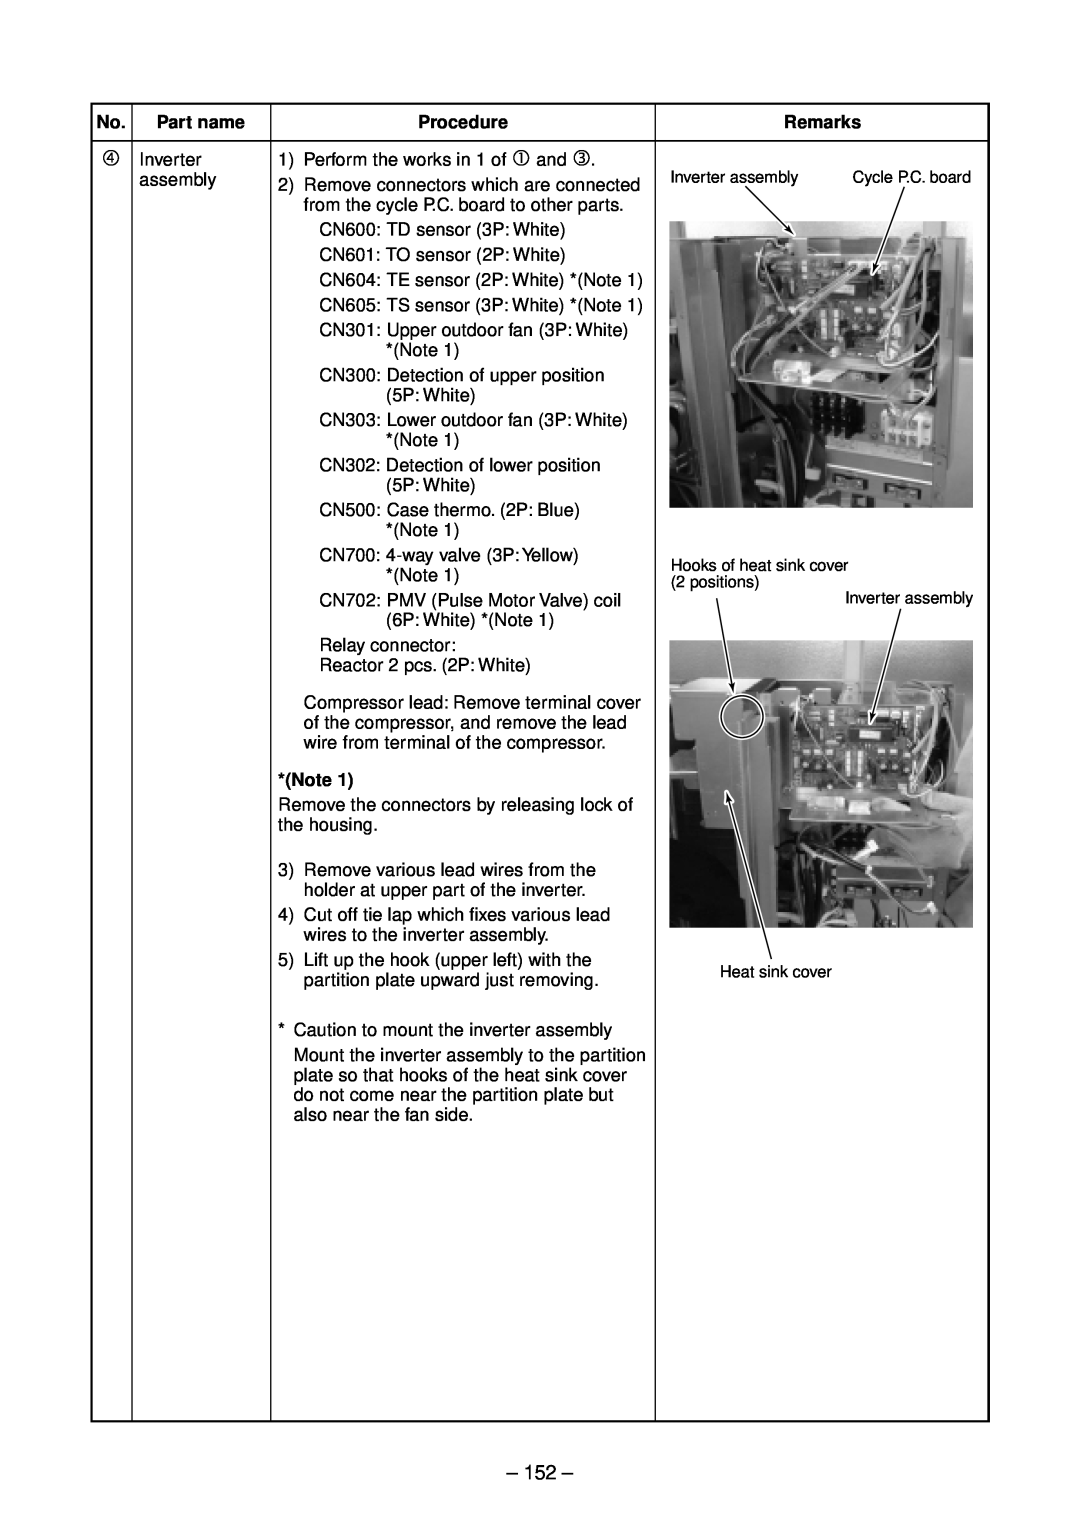 Toshiba RAV-SM562BT-E, RAV-SM803AT-E Part name, Procedure, Remarks, Inverter assembly, Hooks of heat sink cover, positions 